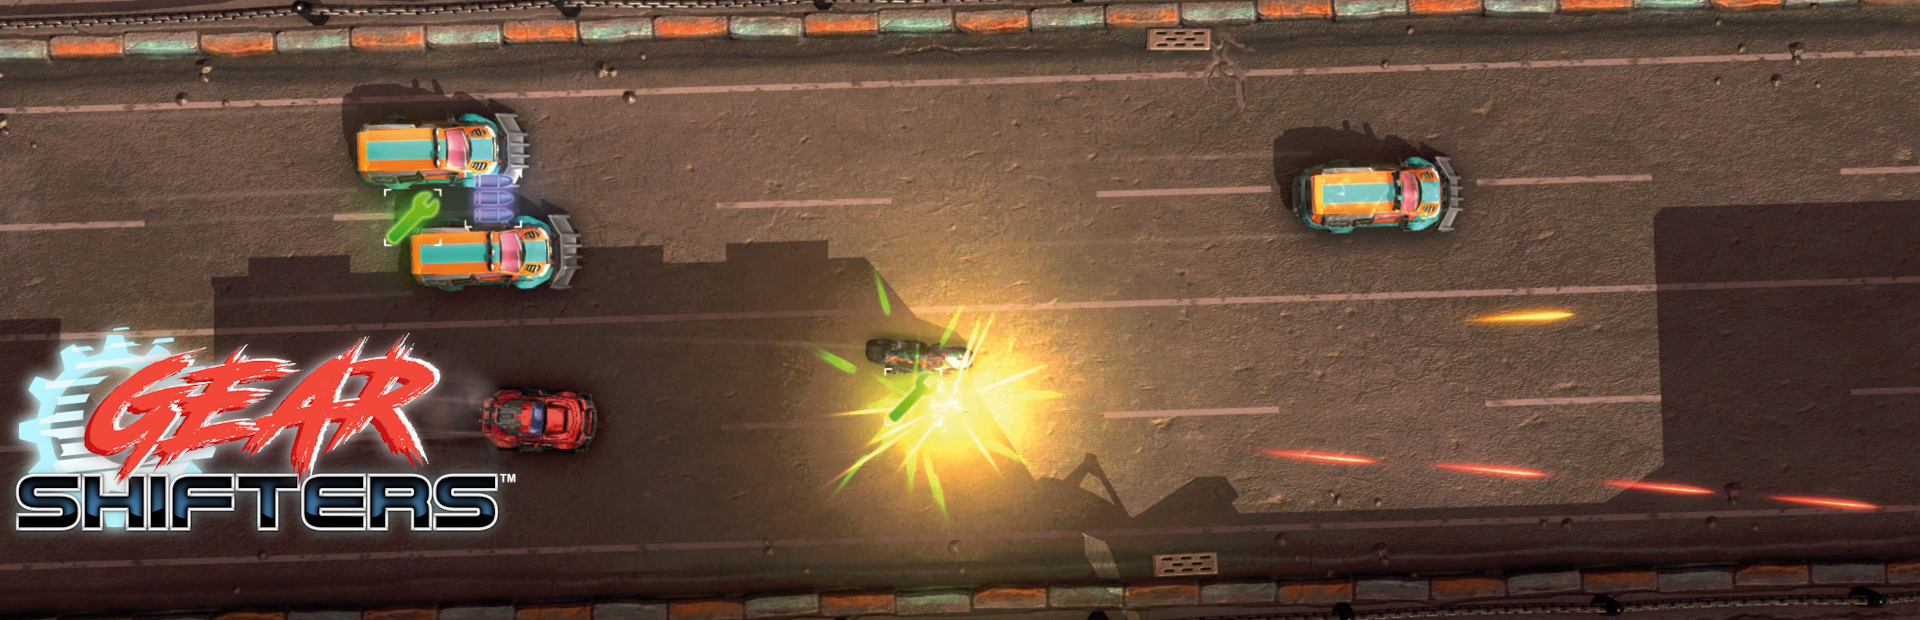 دانلود بازی Gearshifters برای پی سی | گیمباتو